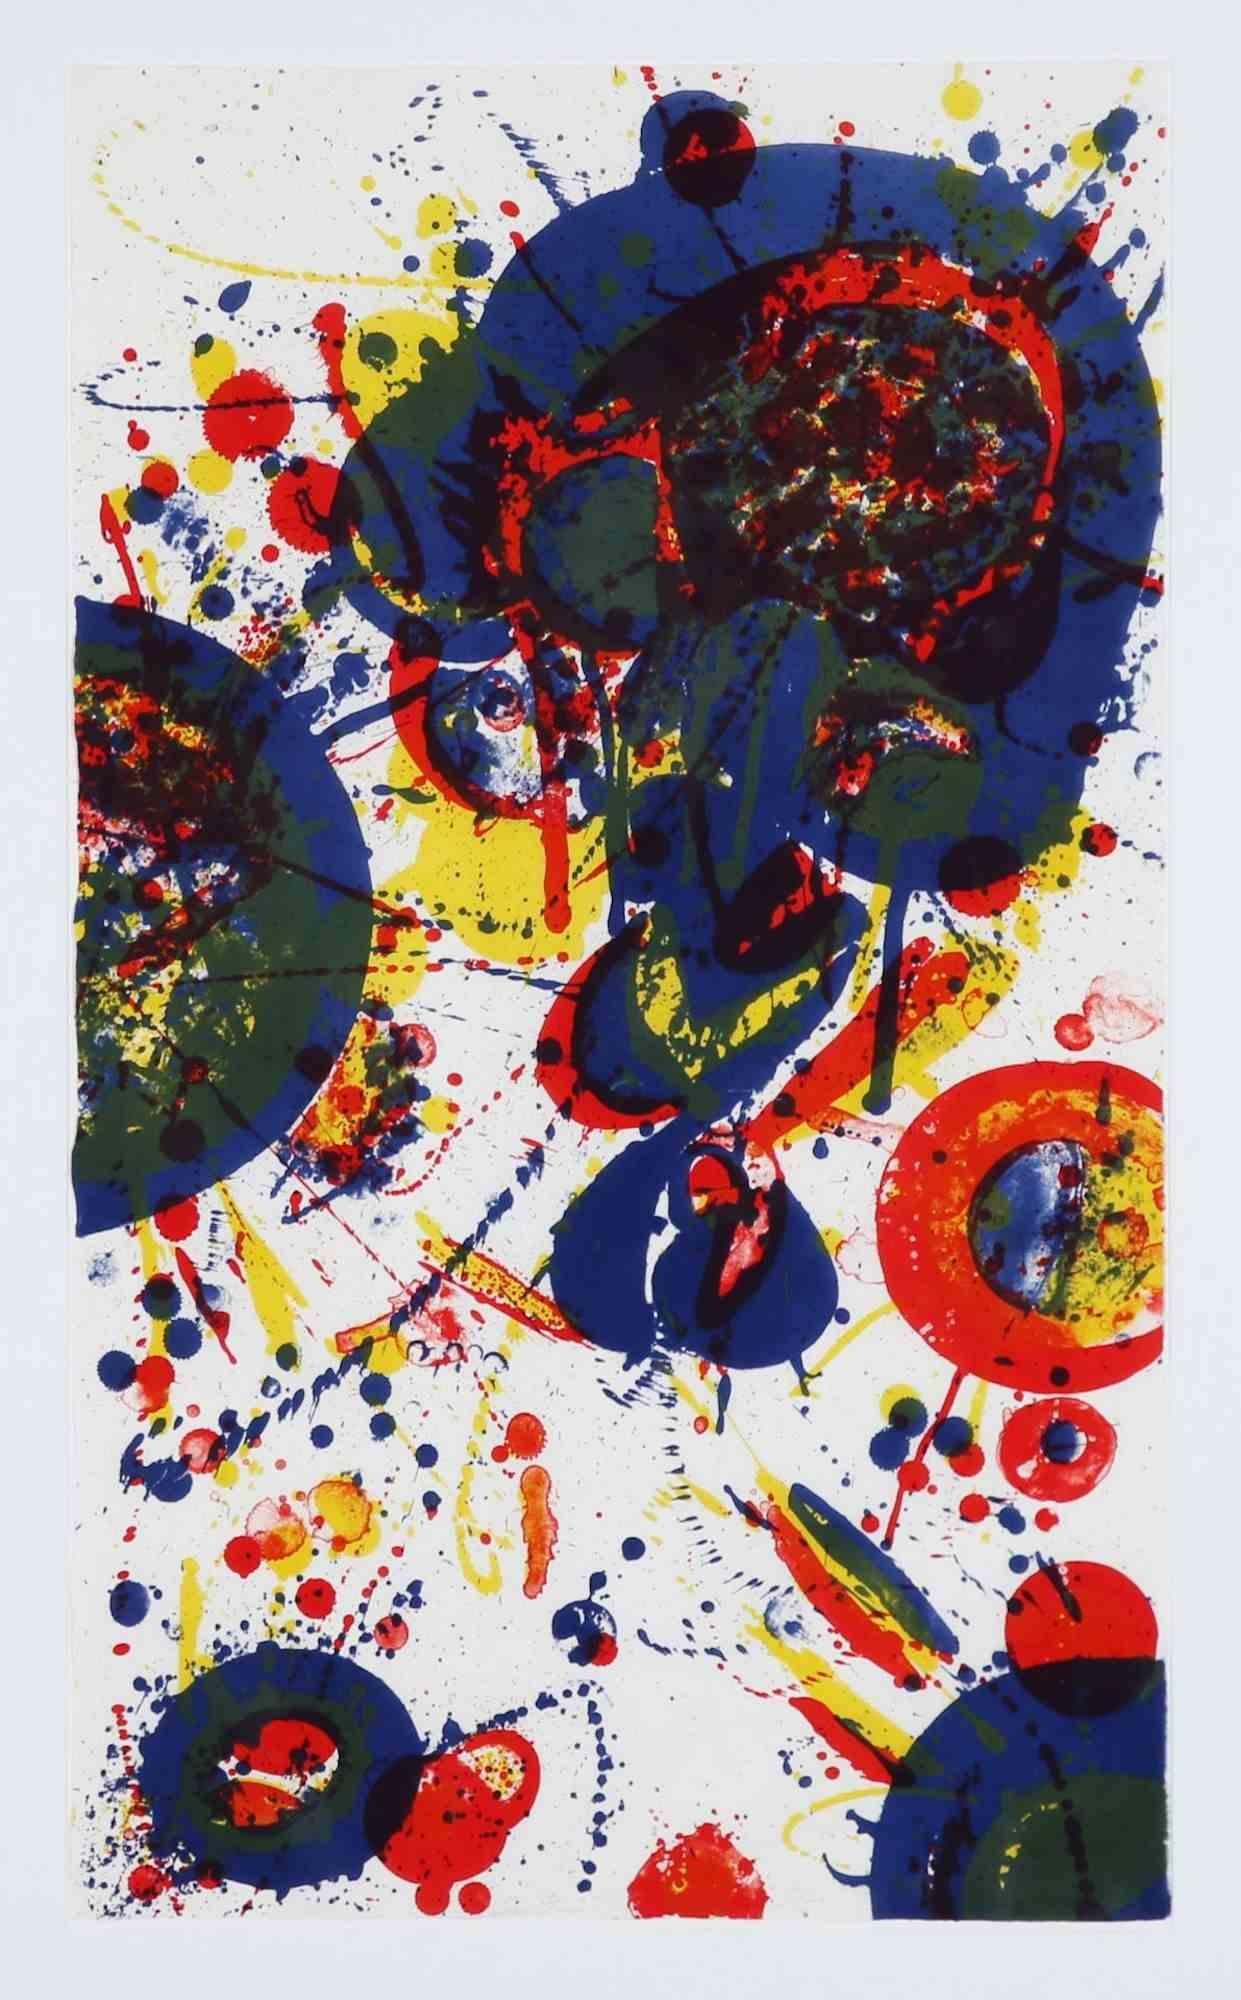 Tokyo Mon Amour est une œuvre d'art réalisée par Sam Francis (1923 San Mateo, Californie) en 1963. 

Lithographie en couleur. Signé à la main et numéroté 4/25.

80x47 cm non encadré. 

Imprimé par Joe Funk pour Joseph Press, Los